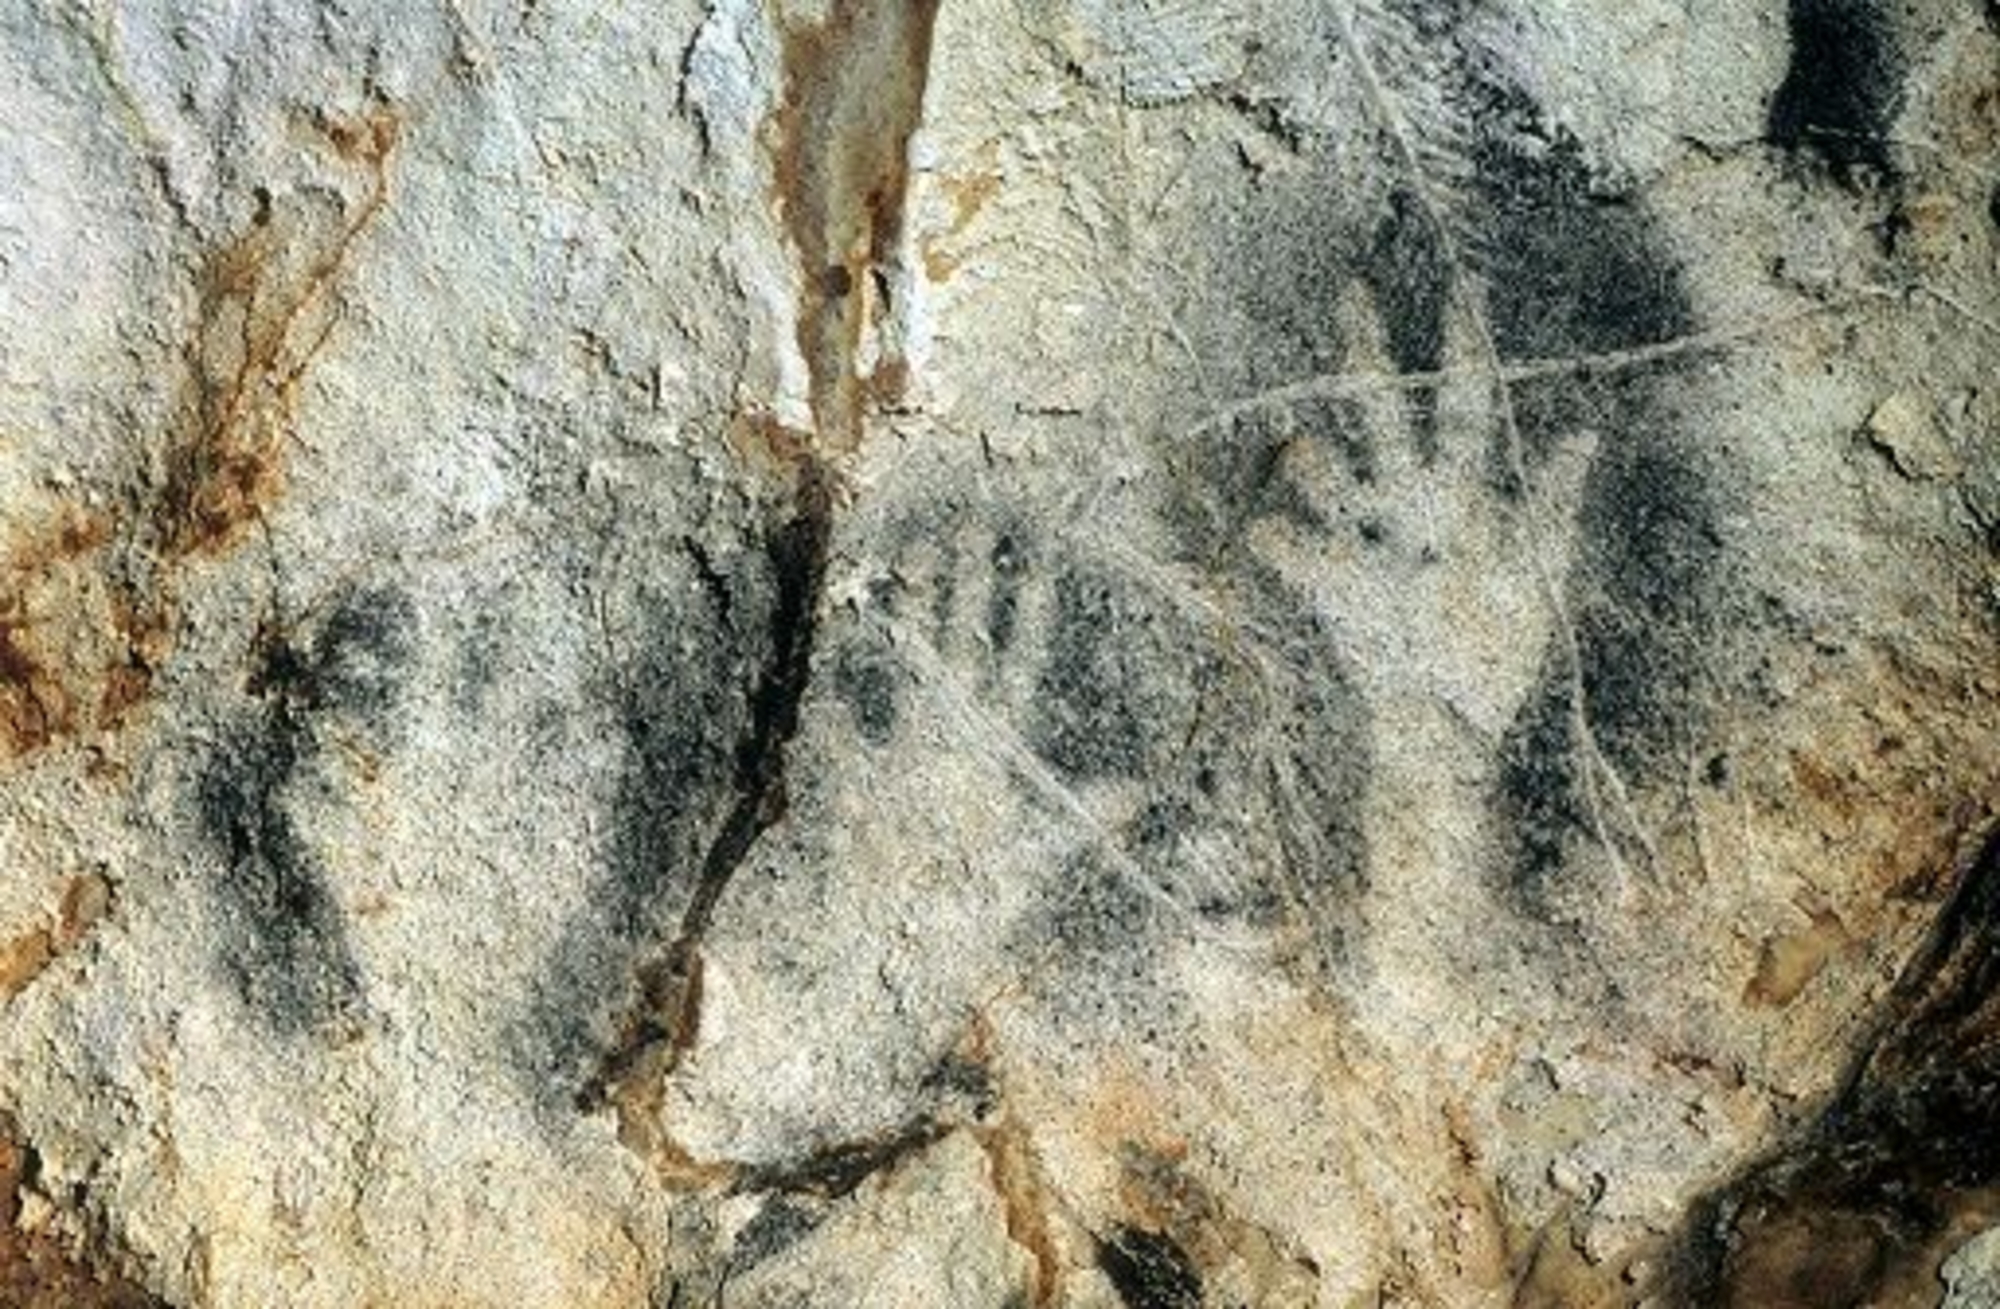 Photographie de trois mains en négatif provenant de la Grotte Cosquer